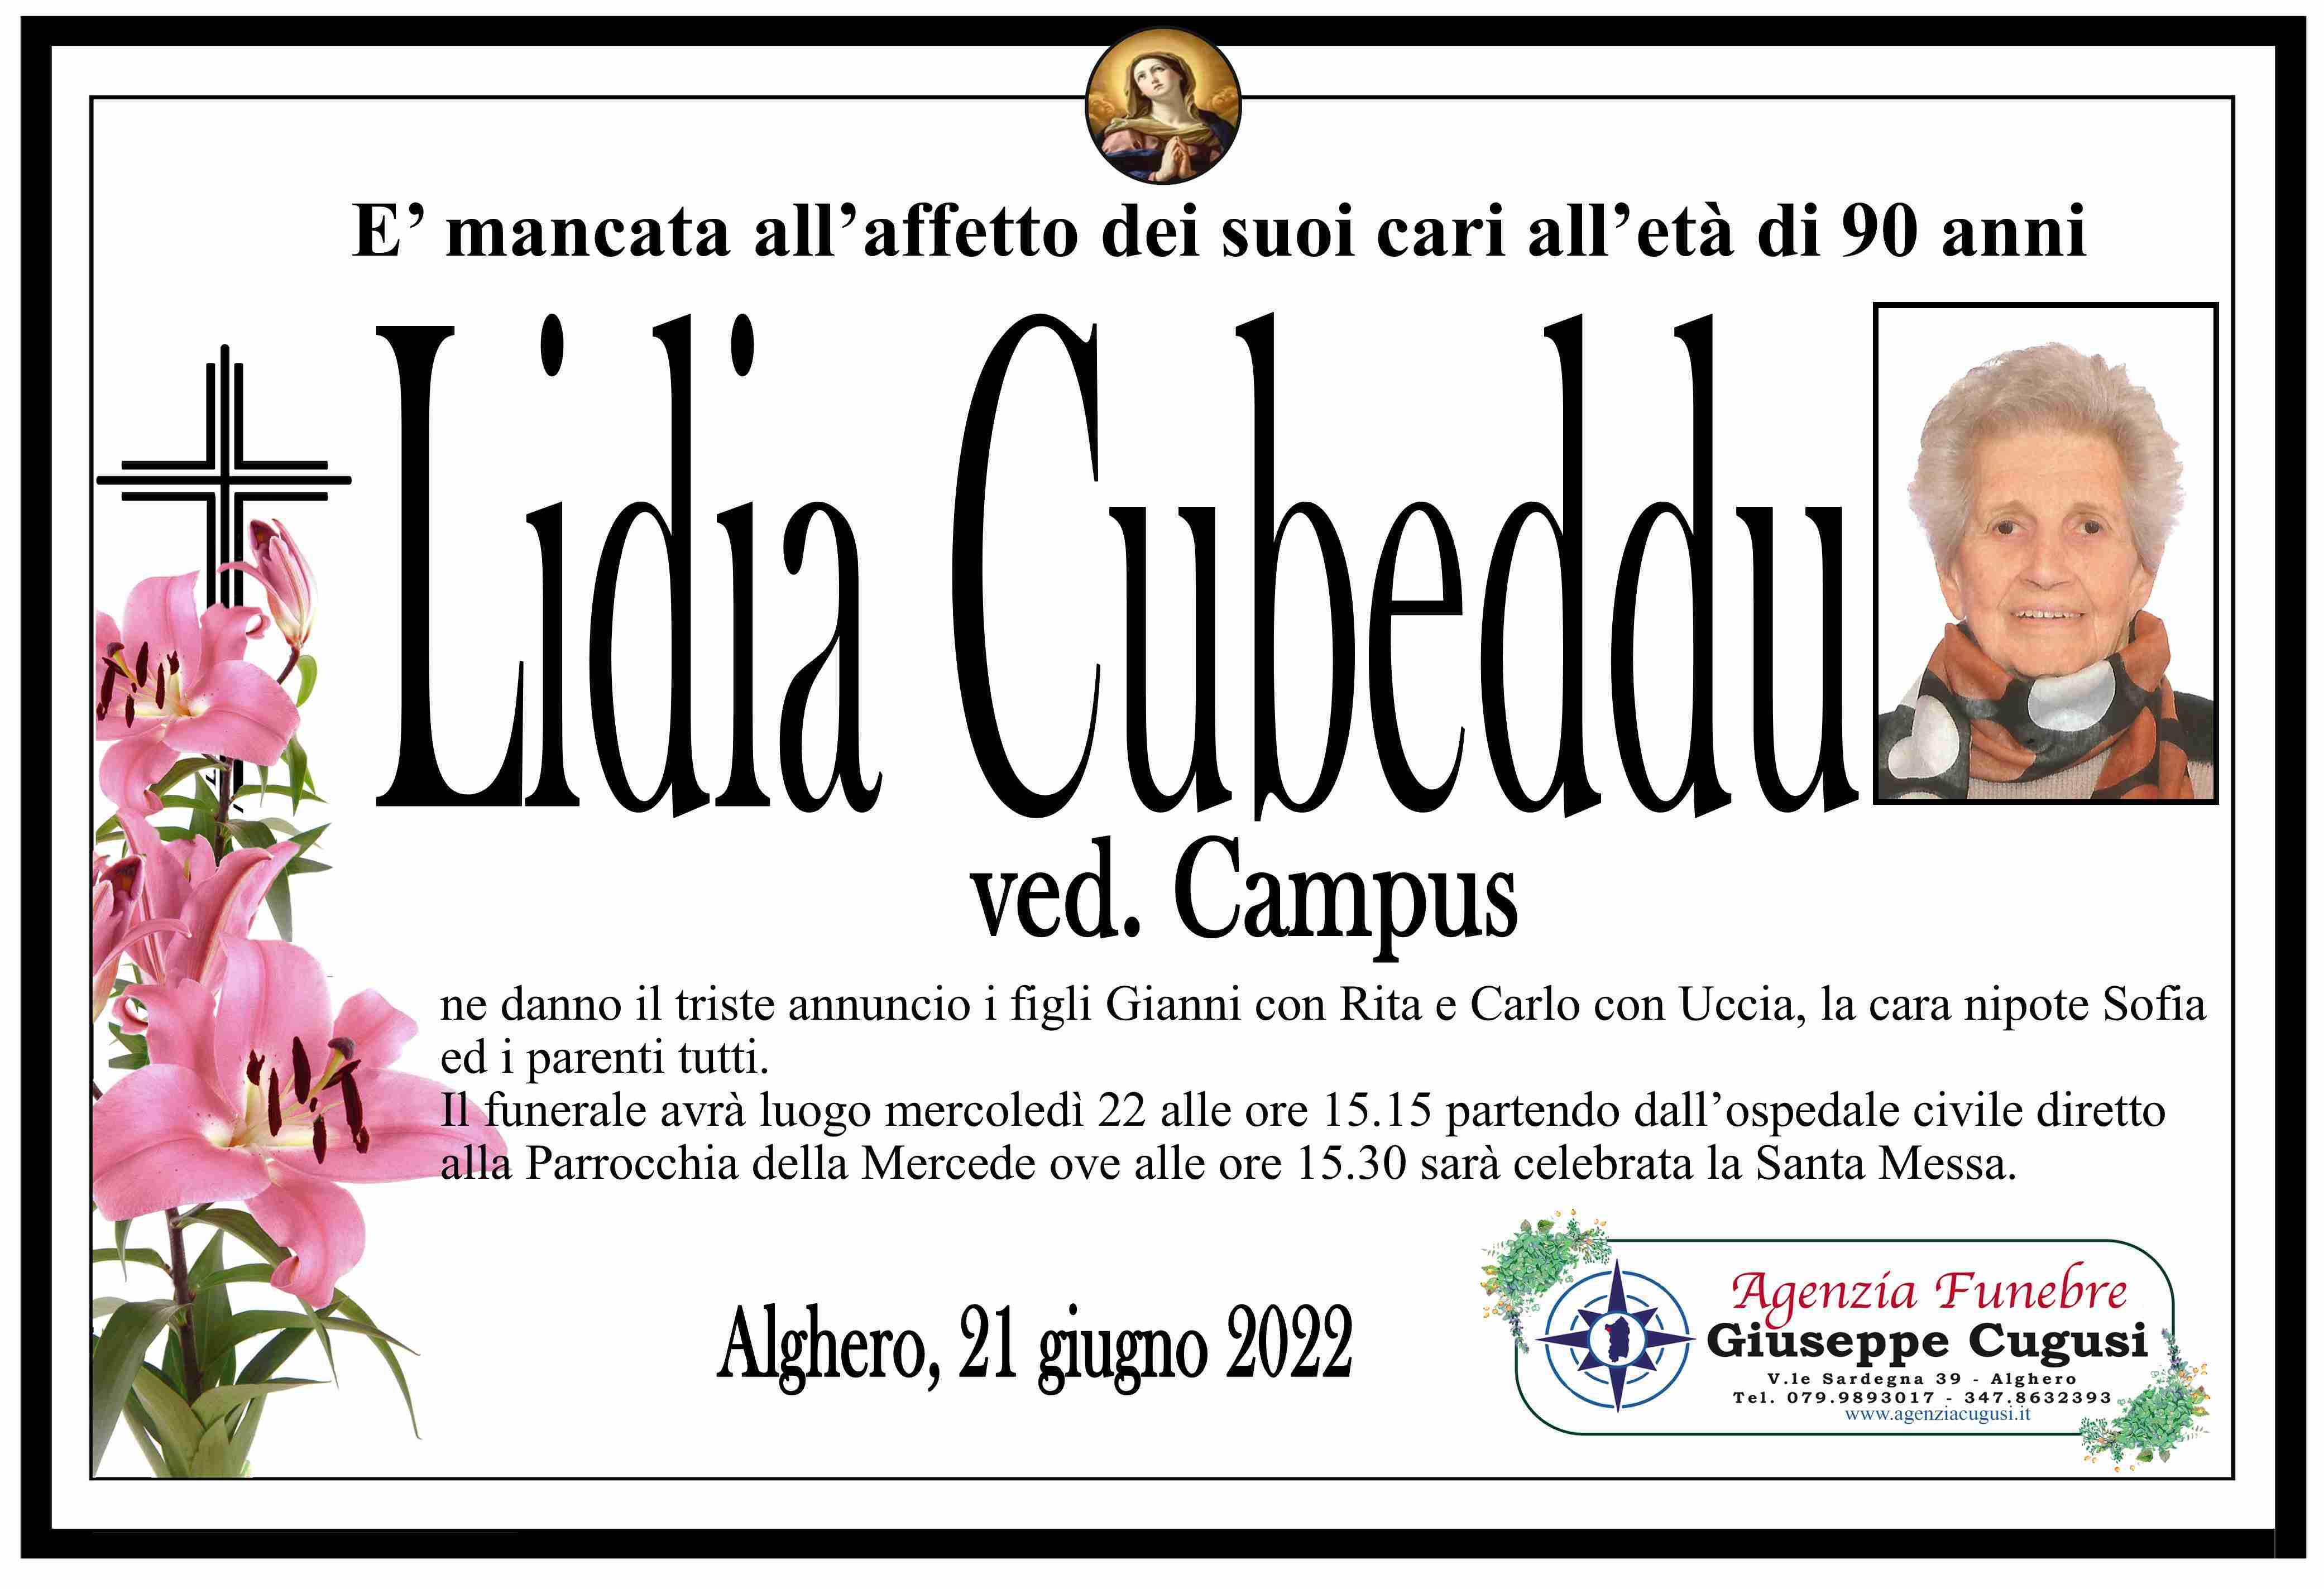 Lidia Cubeddu